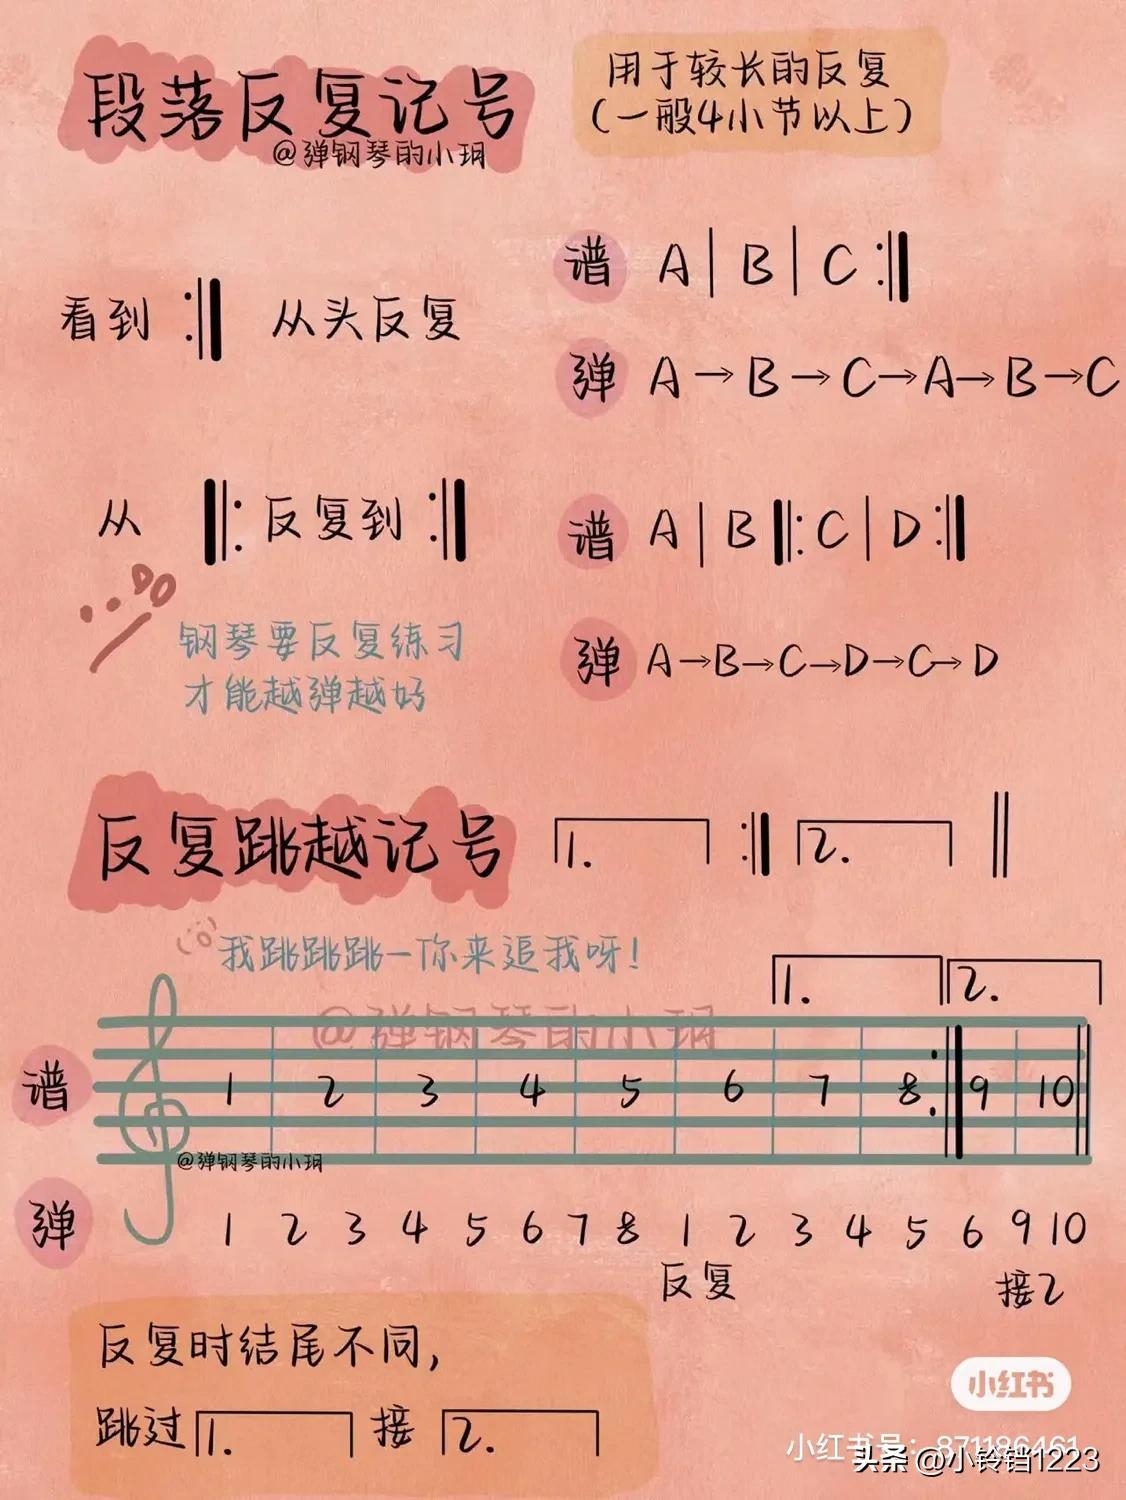 钢琴曲谱的符号含义是什么，钢琴谱特殊符号图案及解释